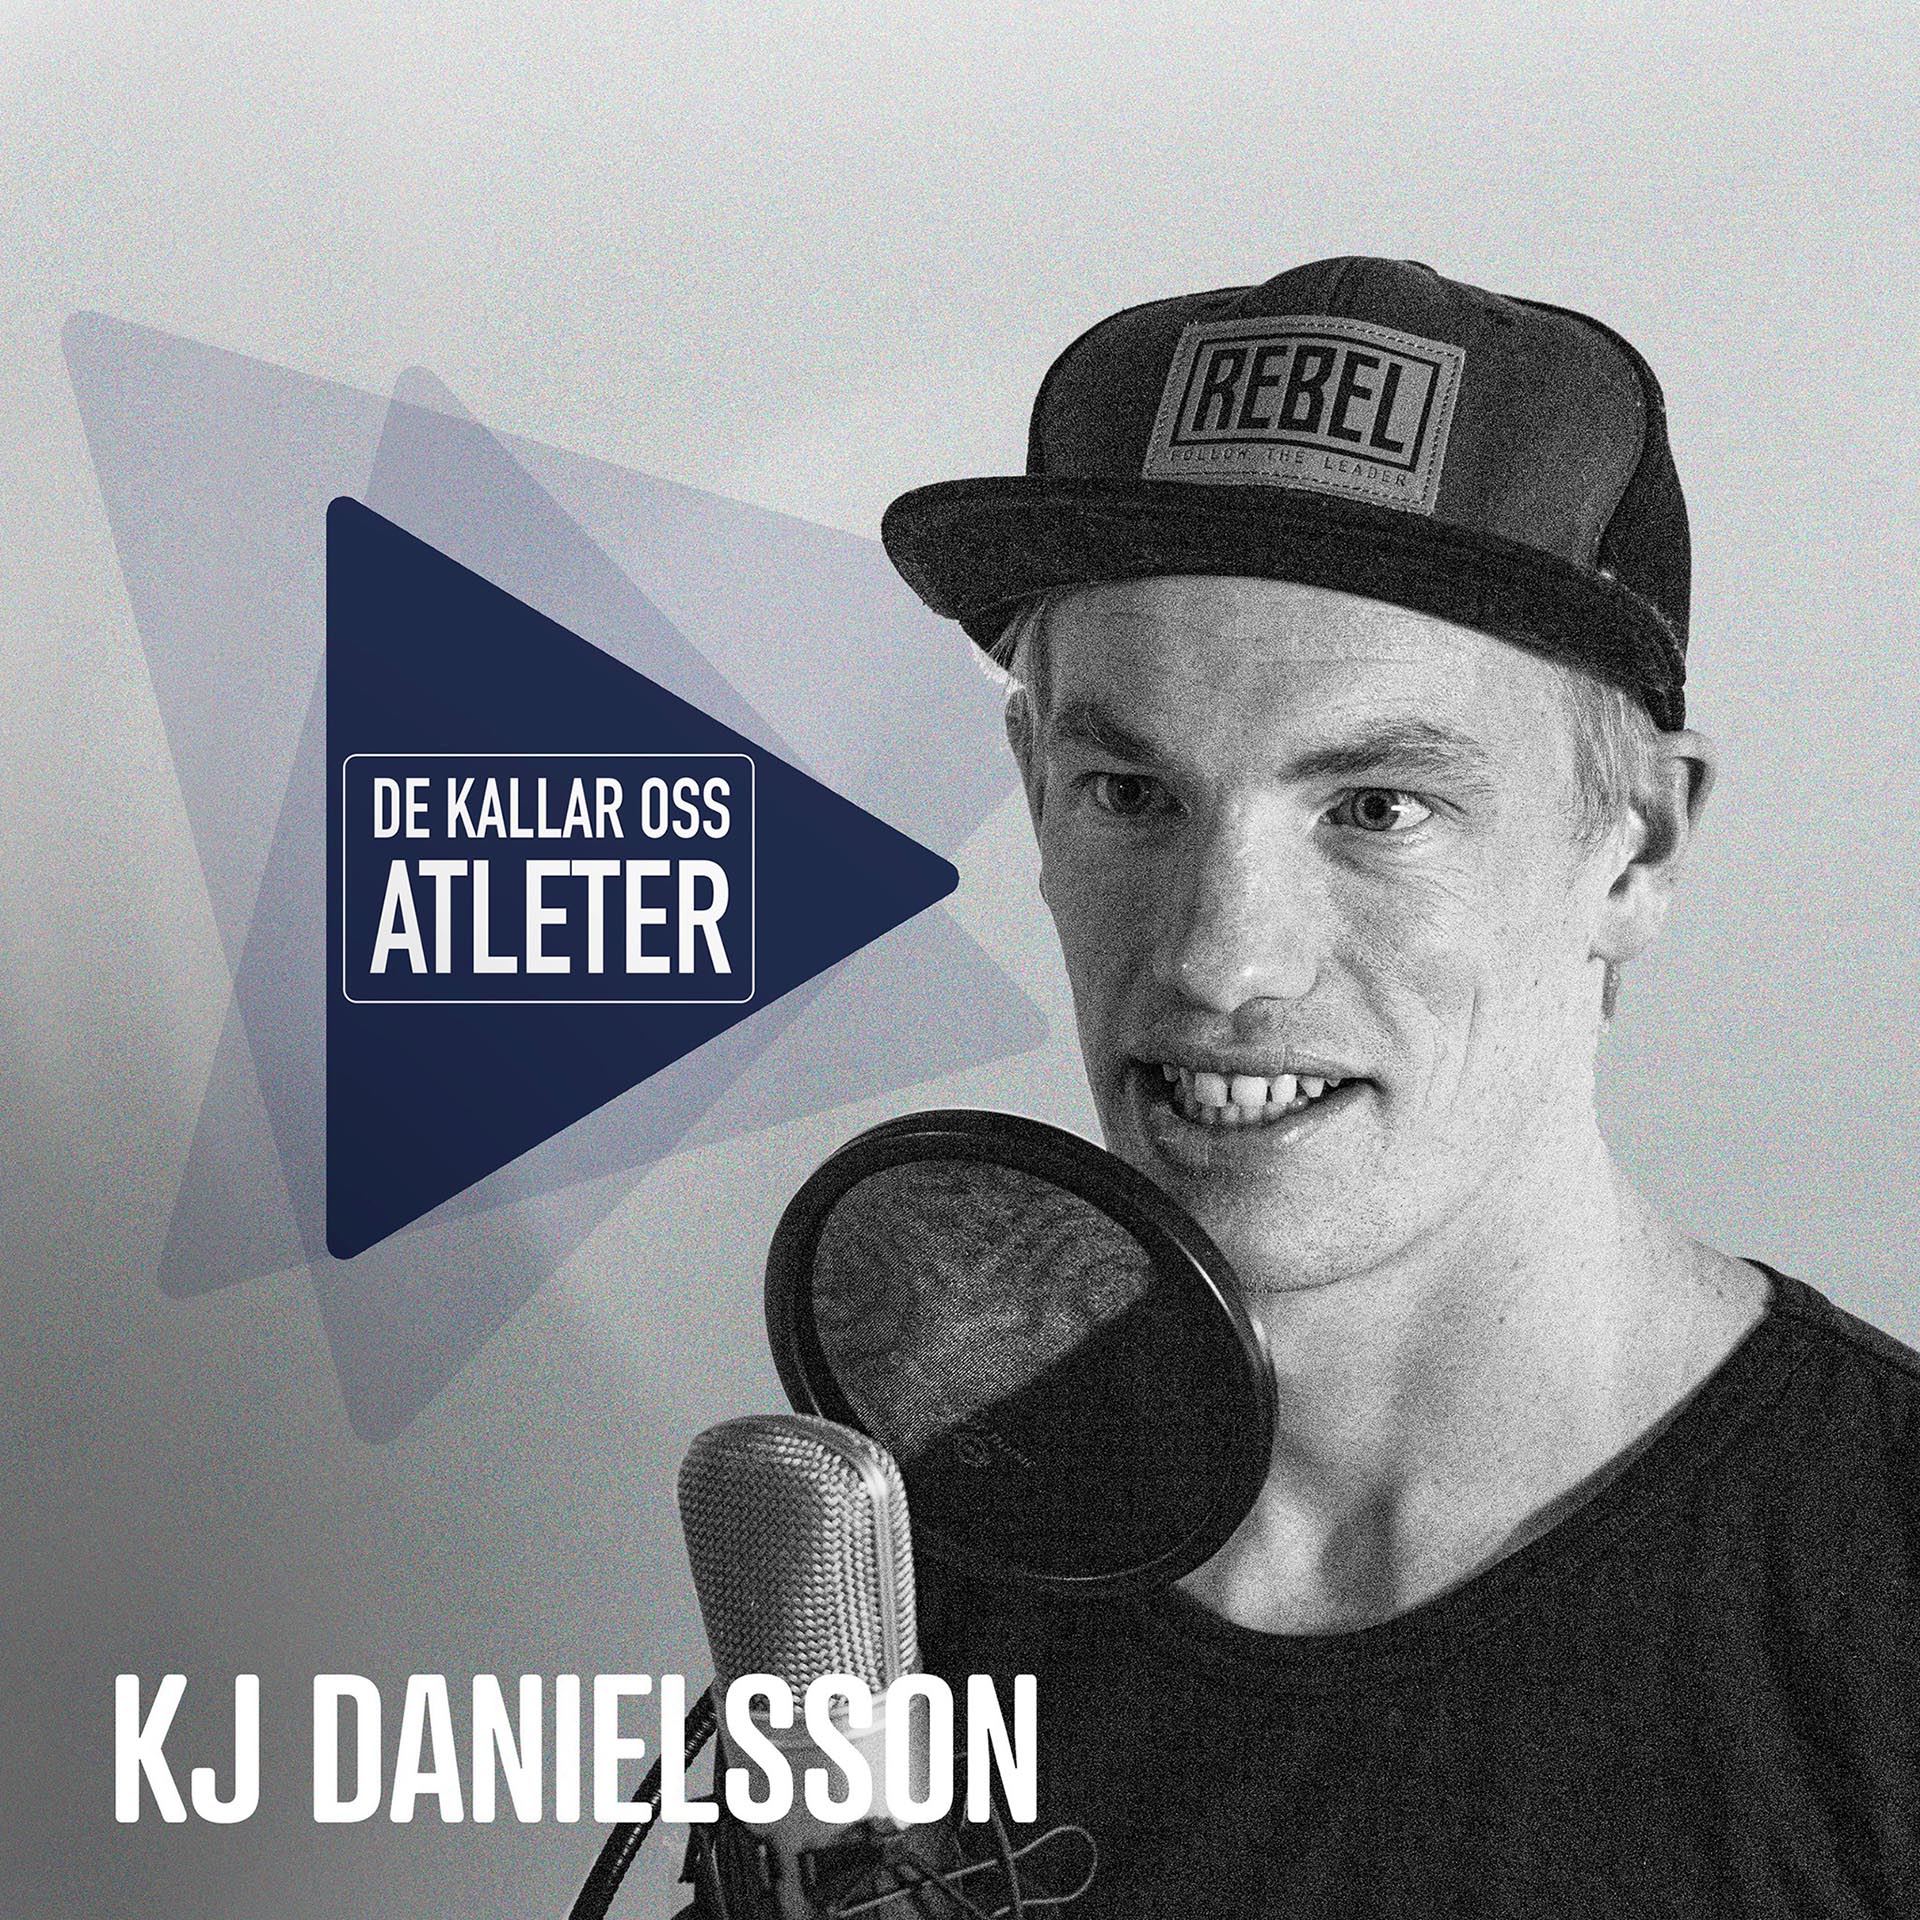 KJ Danielsson: "Jag är en livsstilsatlet snarare än proffsatlet"